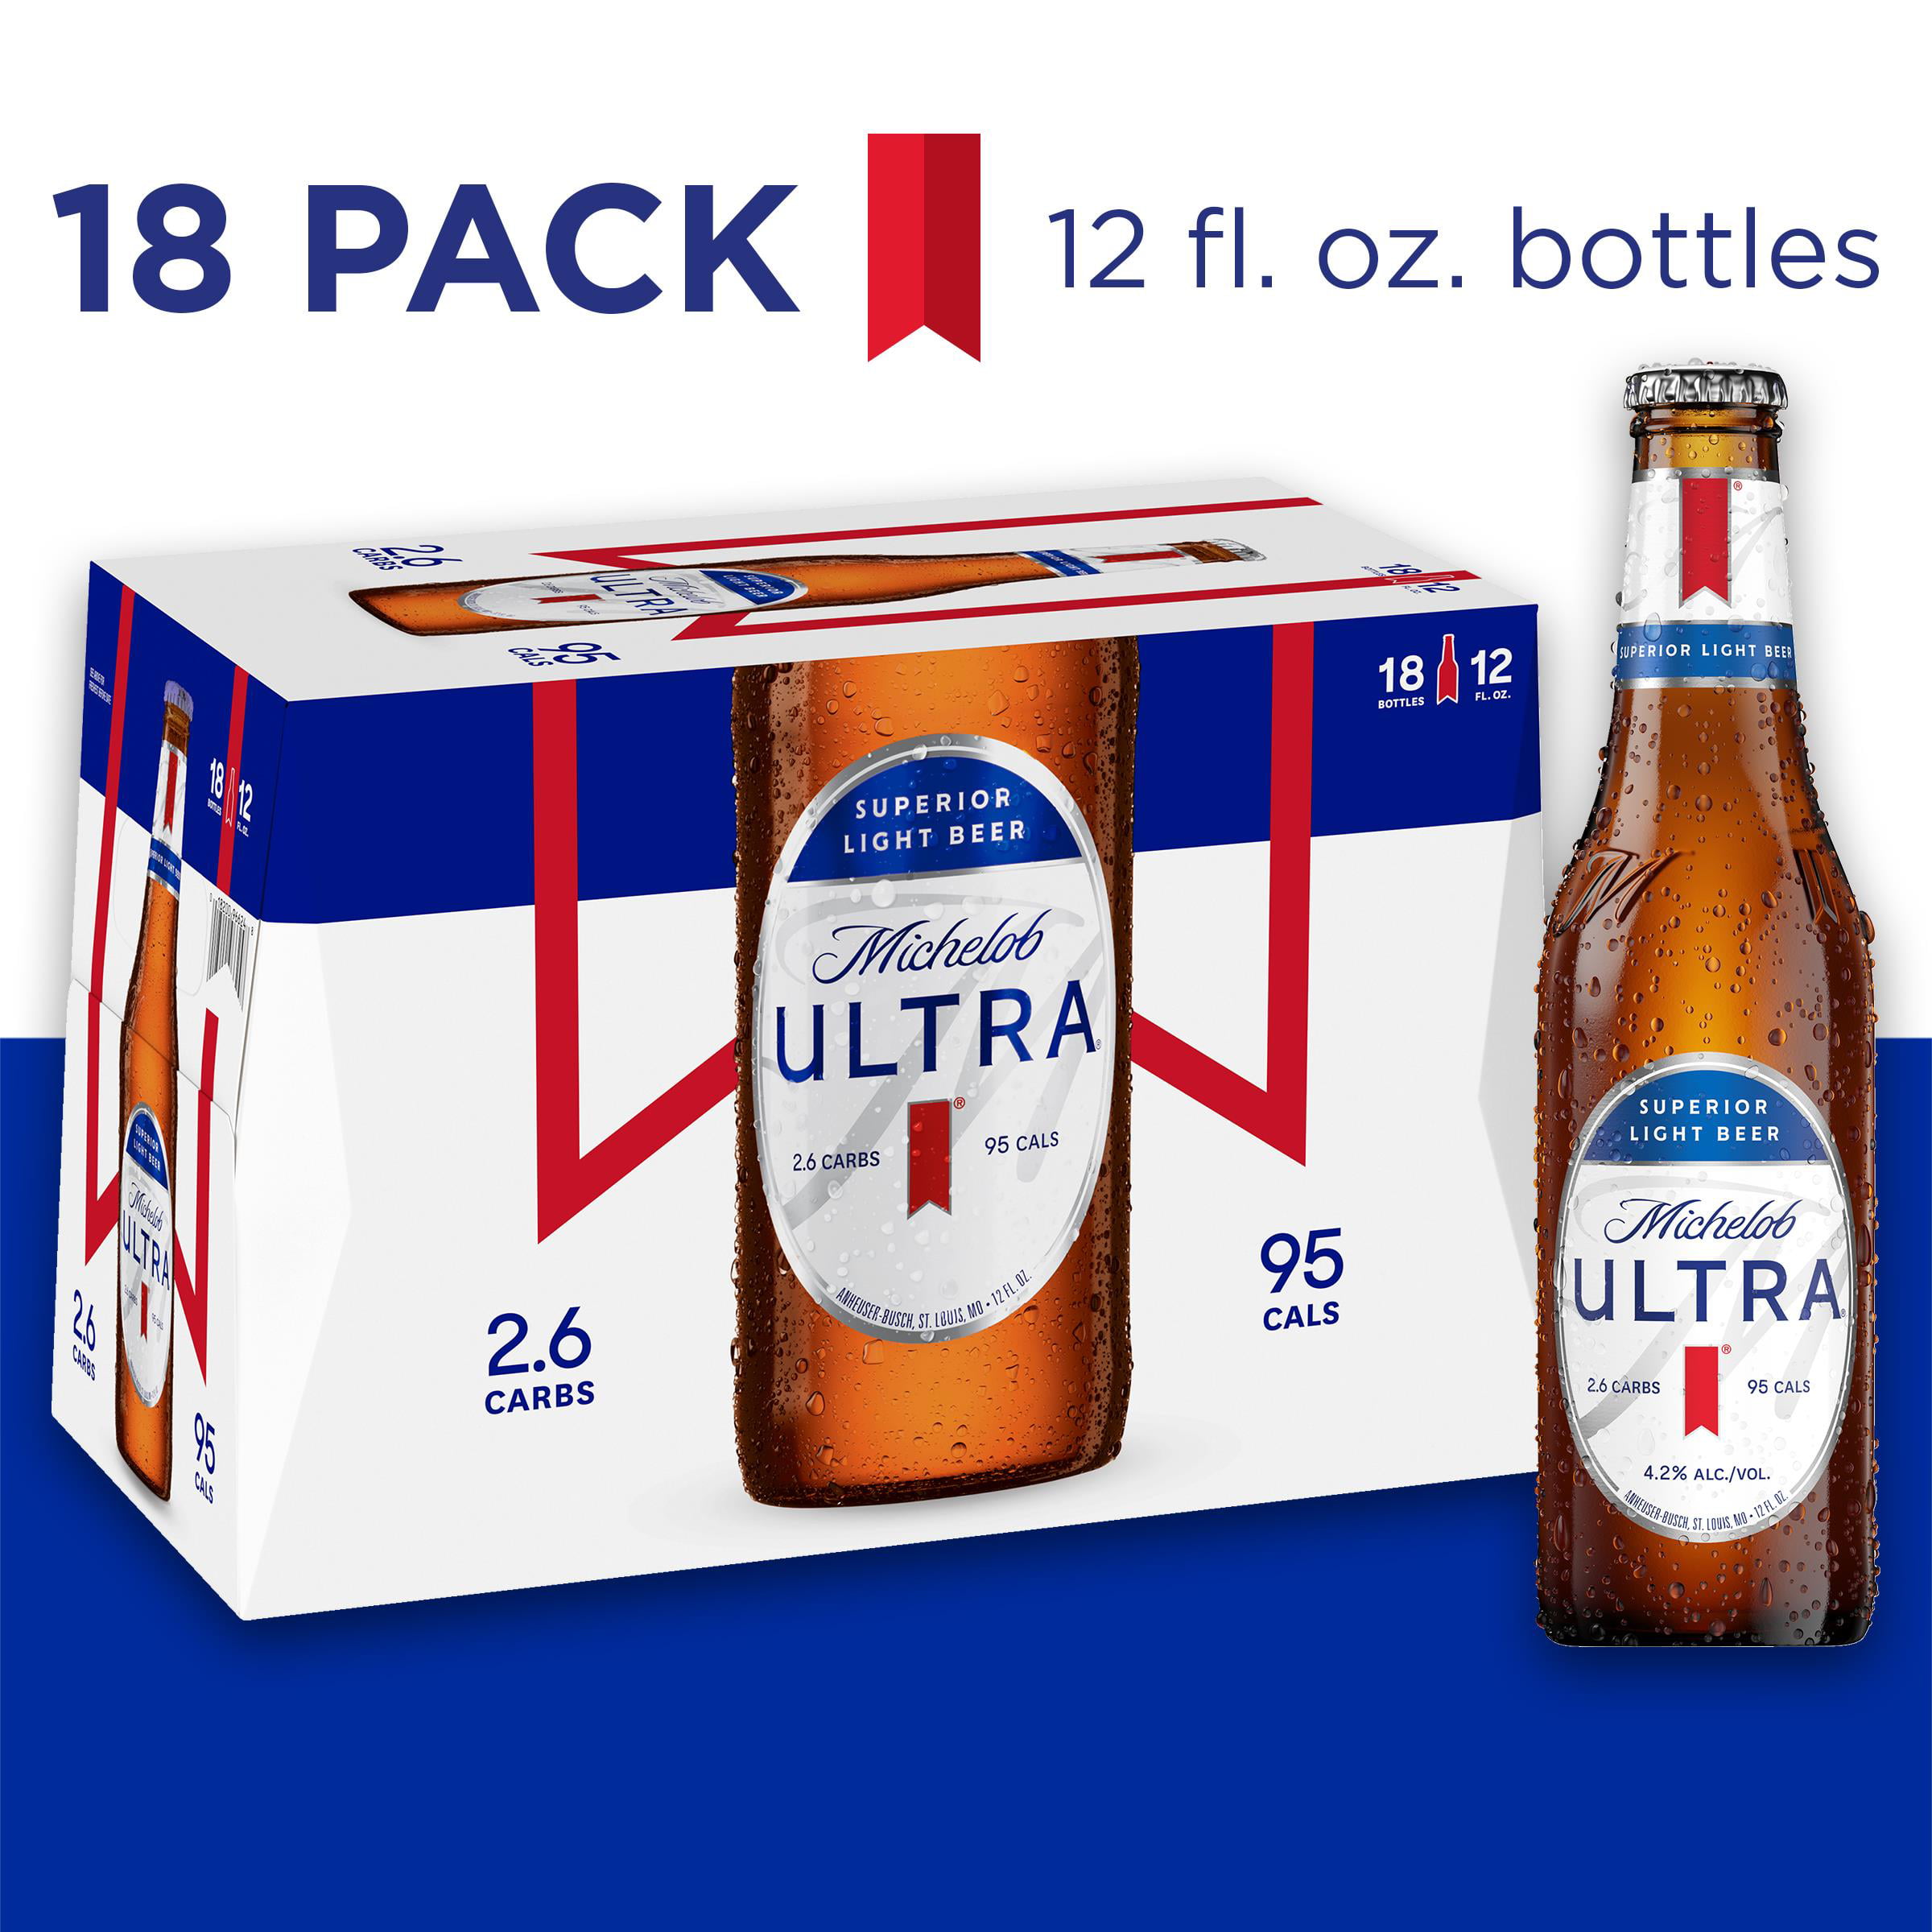 michelob-ultra-light-beer-18-pack-beer-12-fl-oz-bottles-walmart